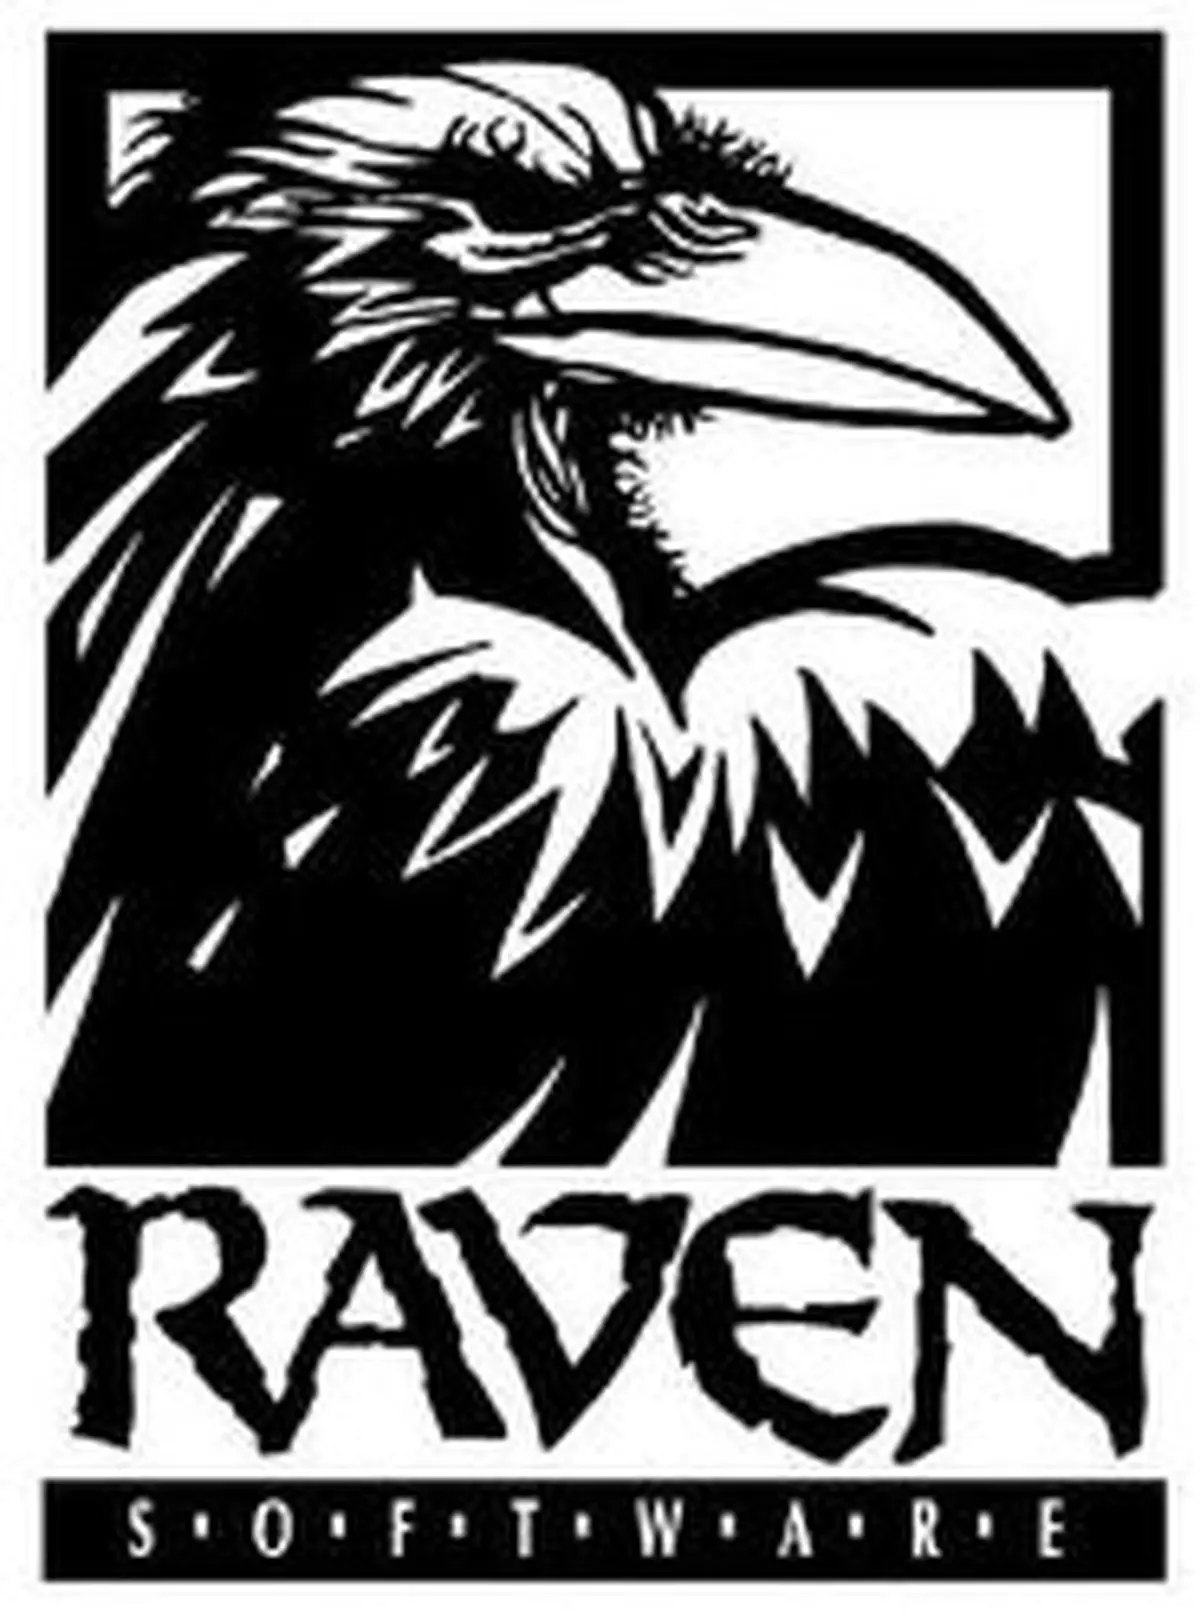 Raven Software — американская компания, разработчик компьютерных игр, расположенная в Мэдисоне (Висконсин).